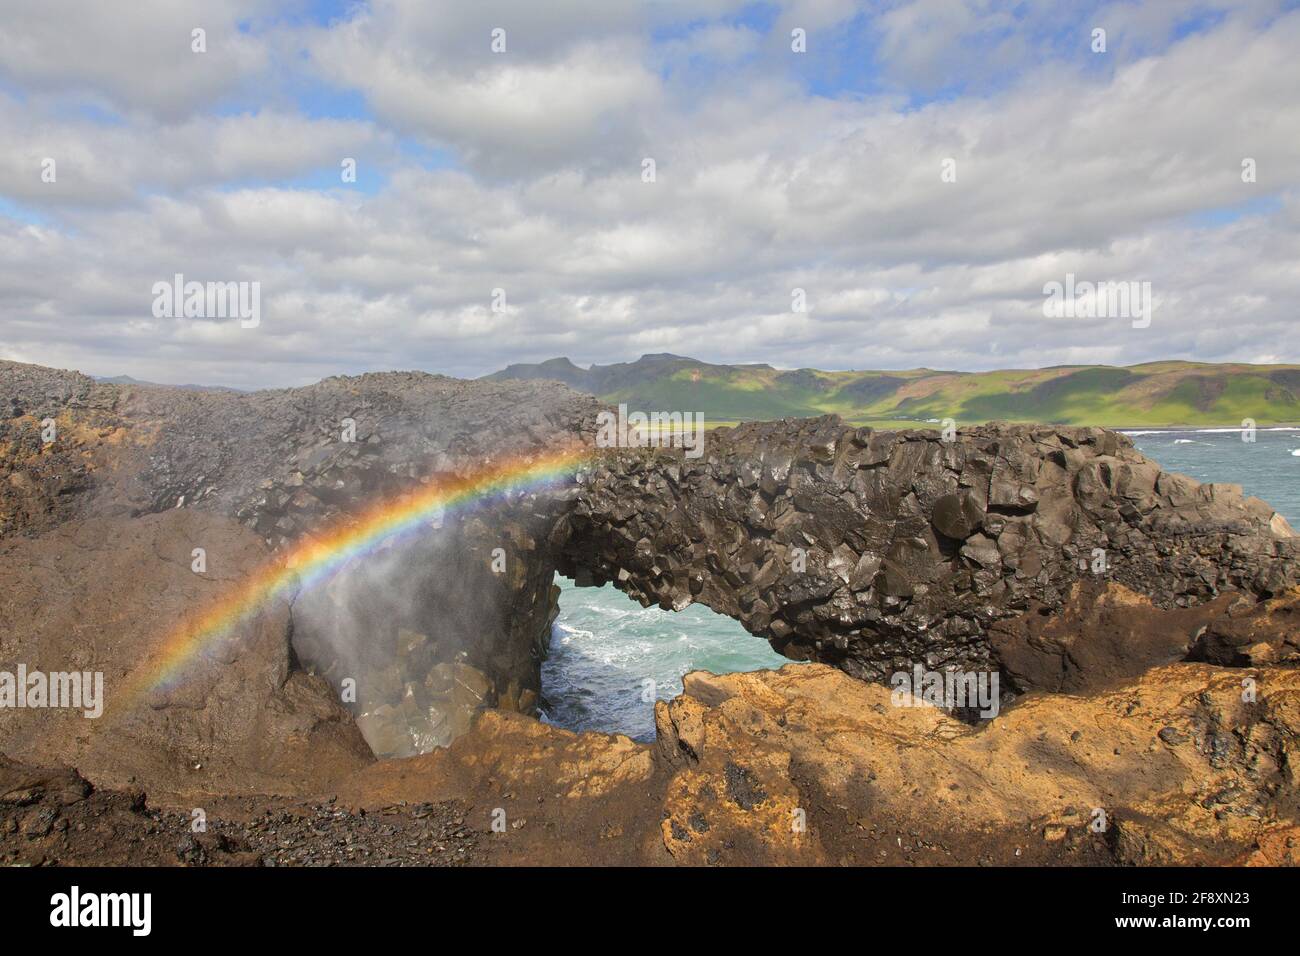 Arc-en-ciel et arc naturel, formation rocheuse de basalte noire érodée à Cape Dyrhólaey / Cape Portland près de Vík í Mýrdal, Islande Banque D'Images